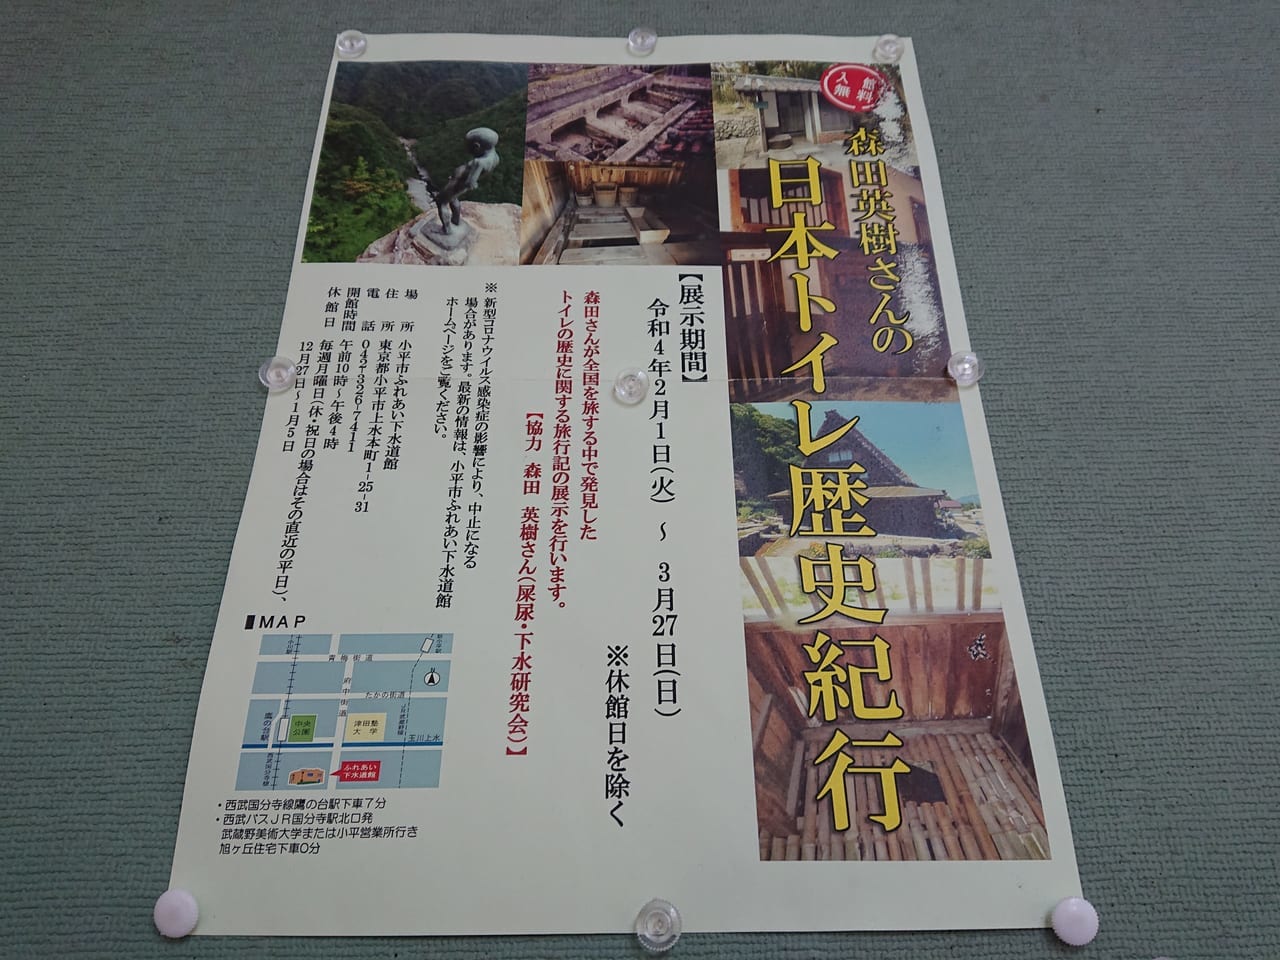 森田英樹さんの日本トイレ歴史紀行展が小平市ふれあい下水道館で開催